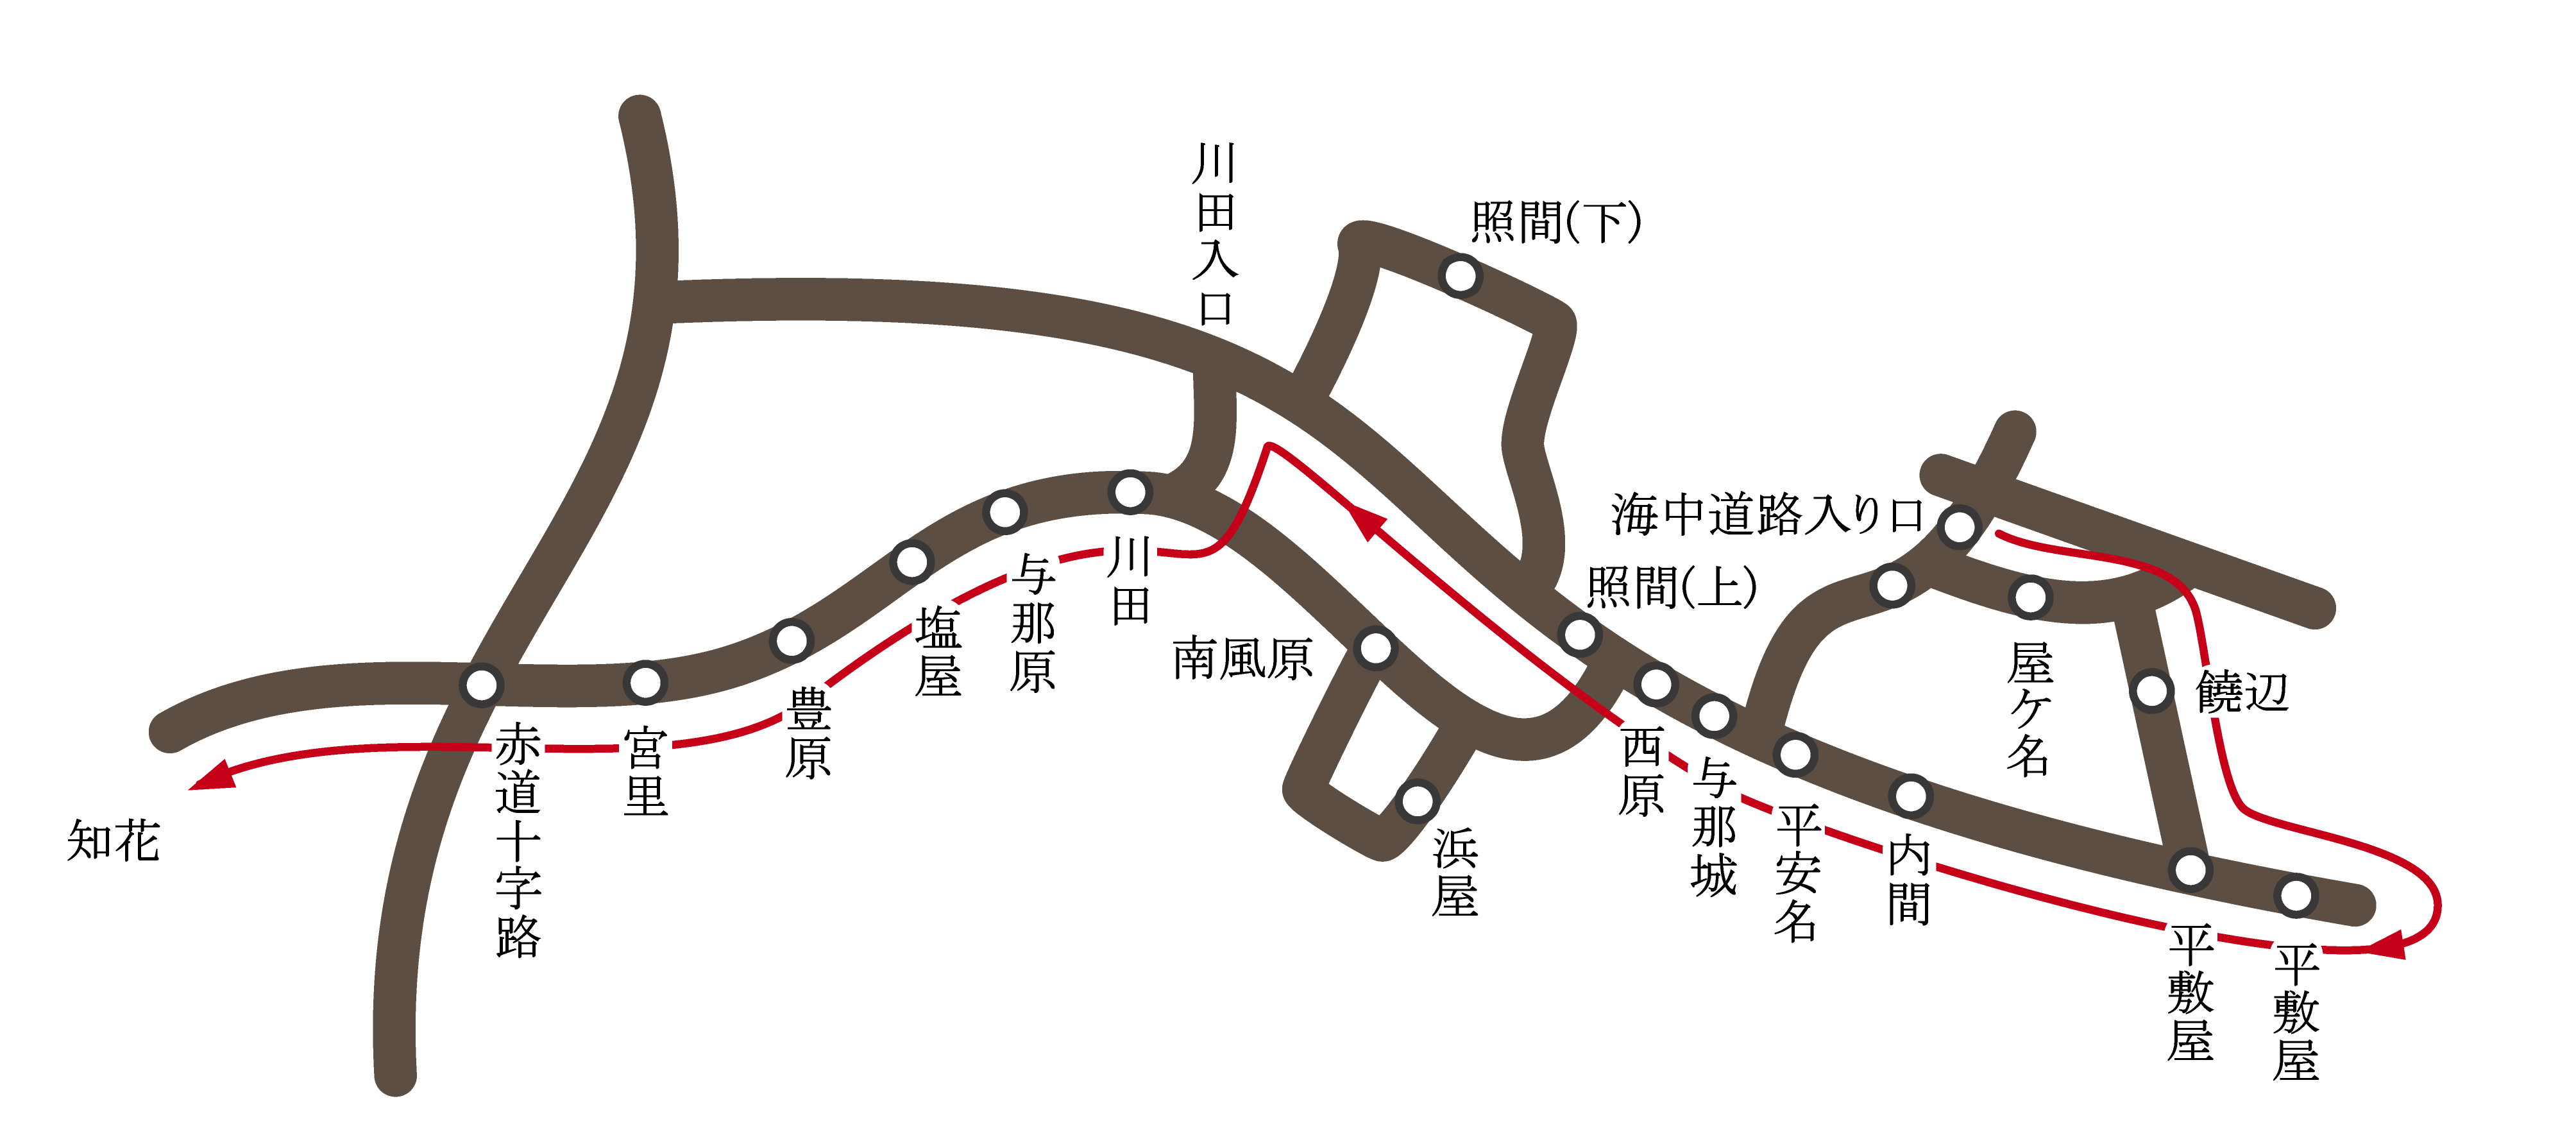 バス運行時刻表（与勝→クリニック、上り）